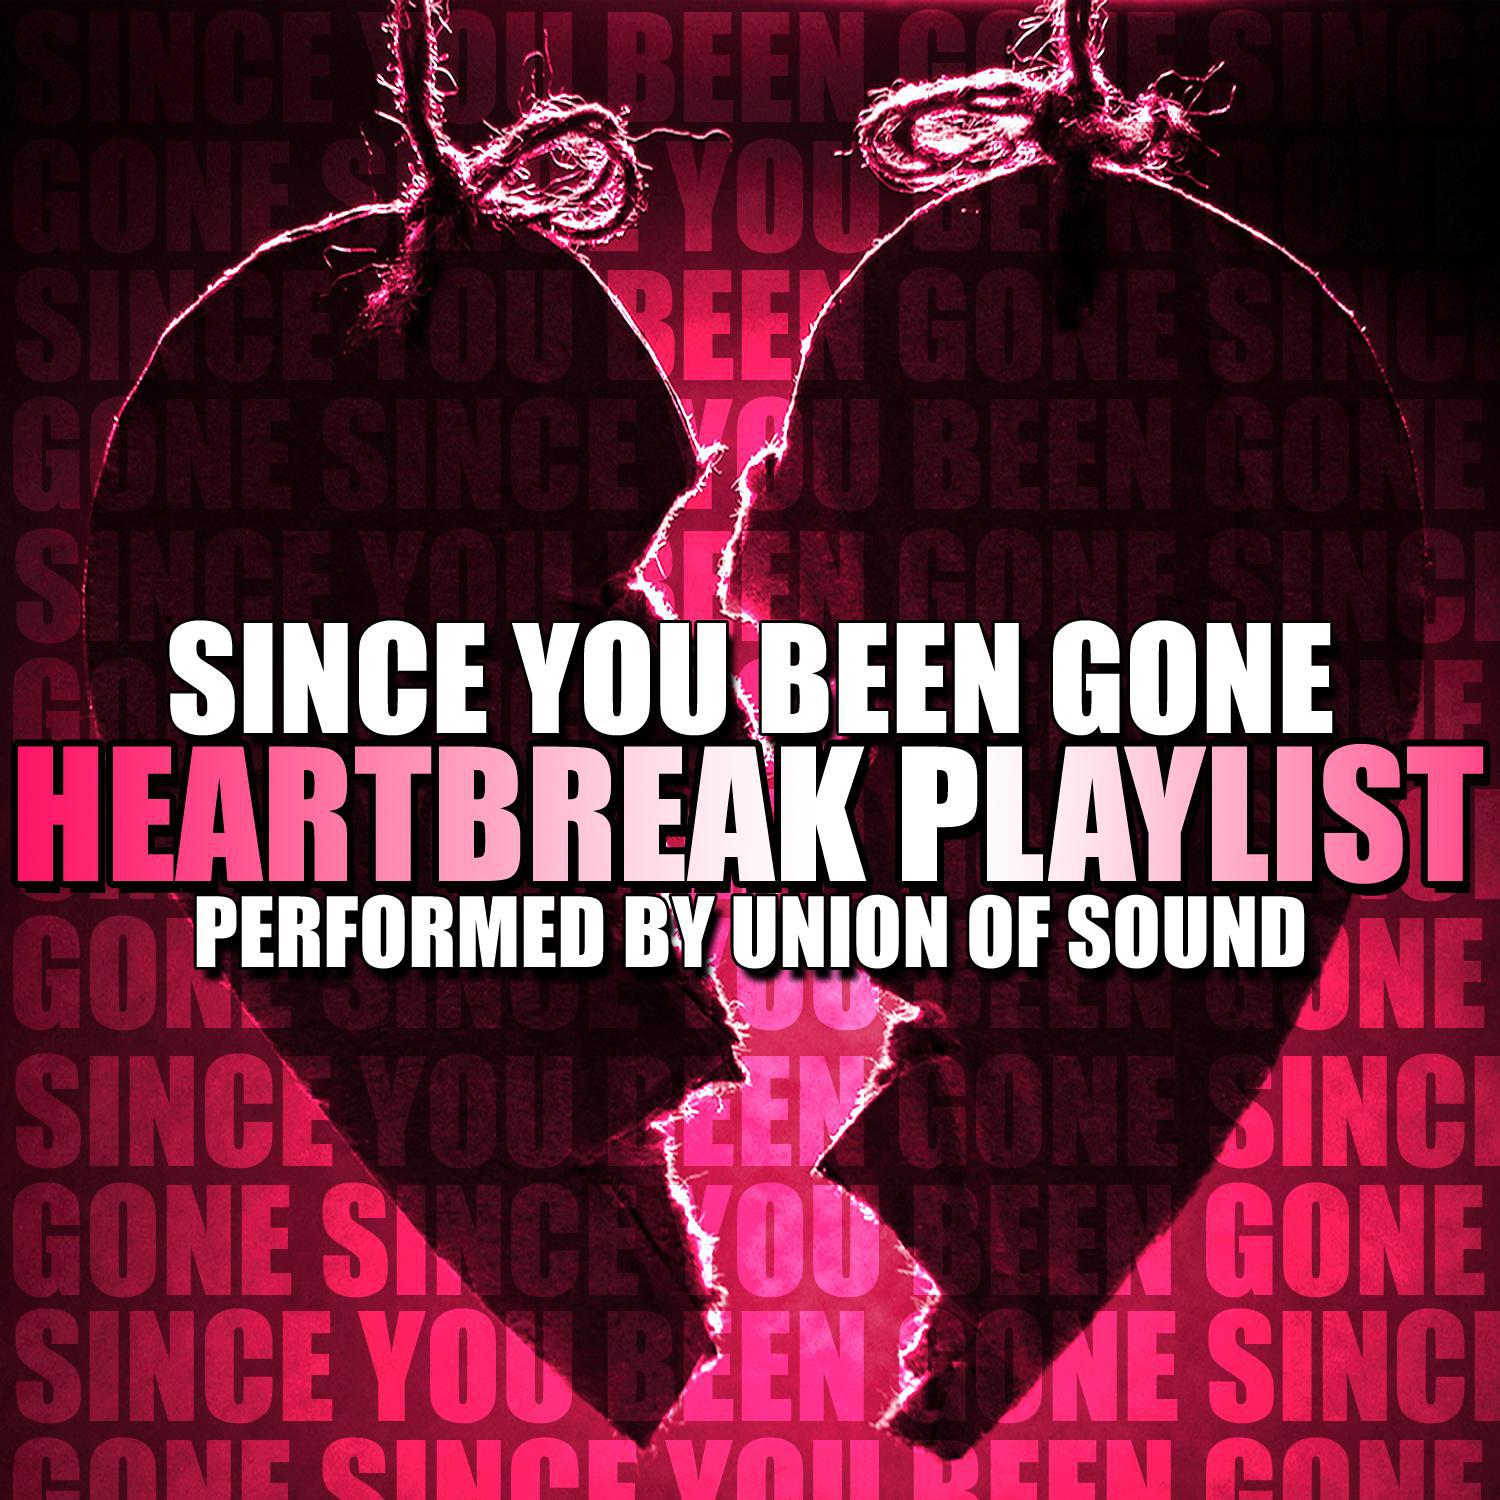 Since You Been Gone: Heartbreak Playlist